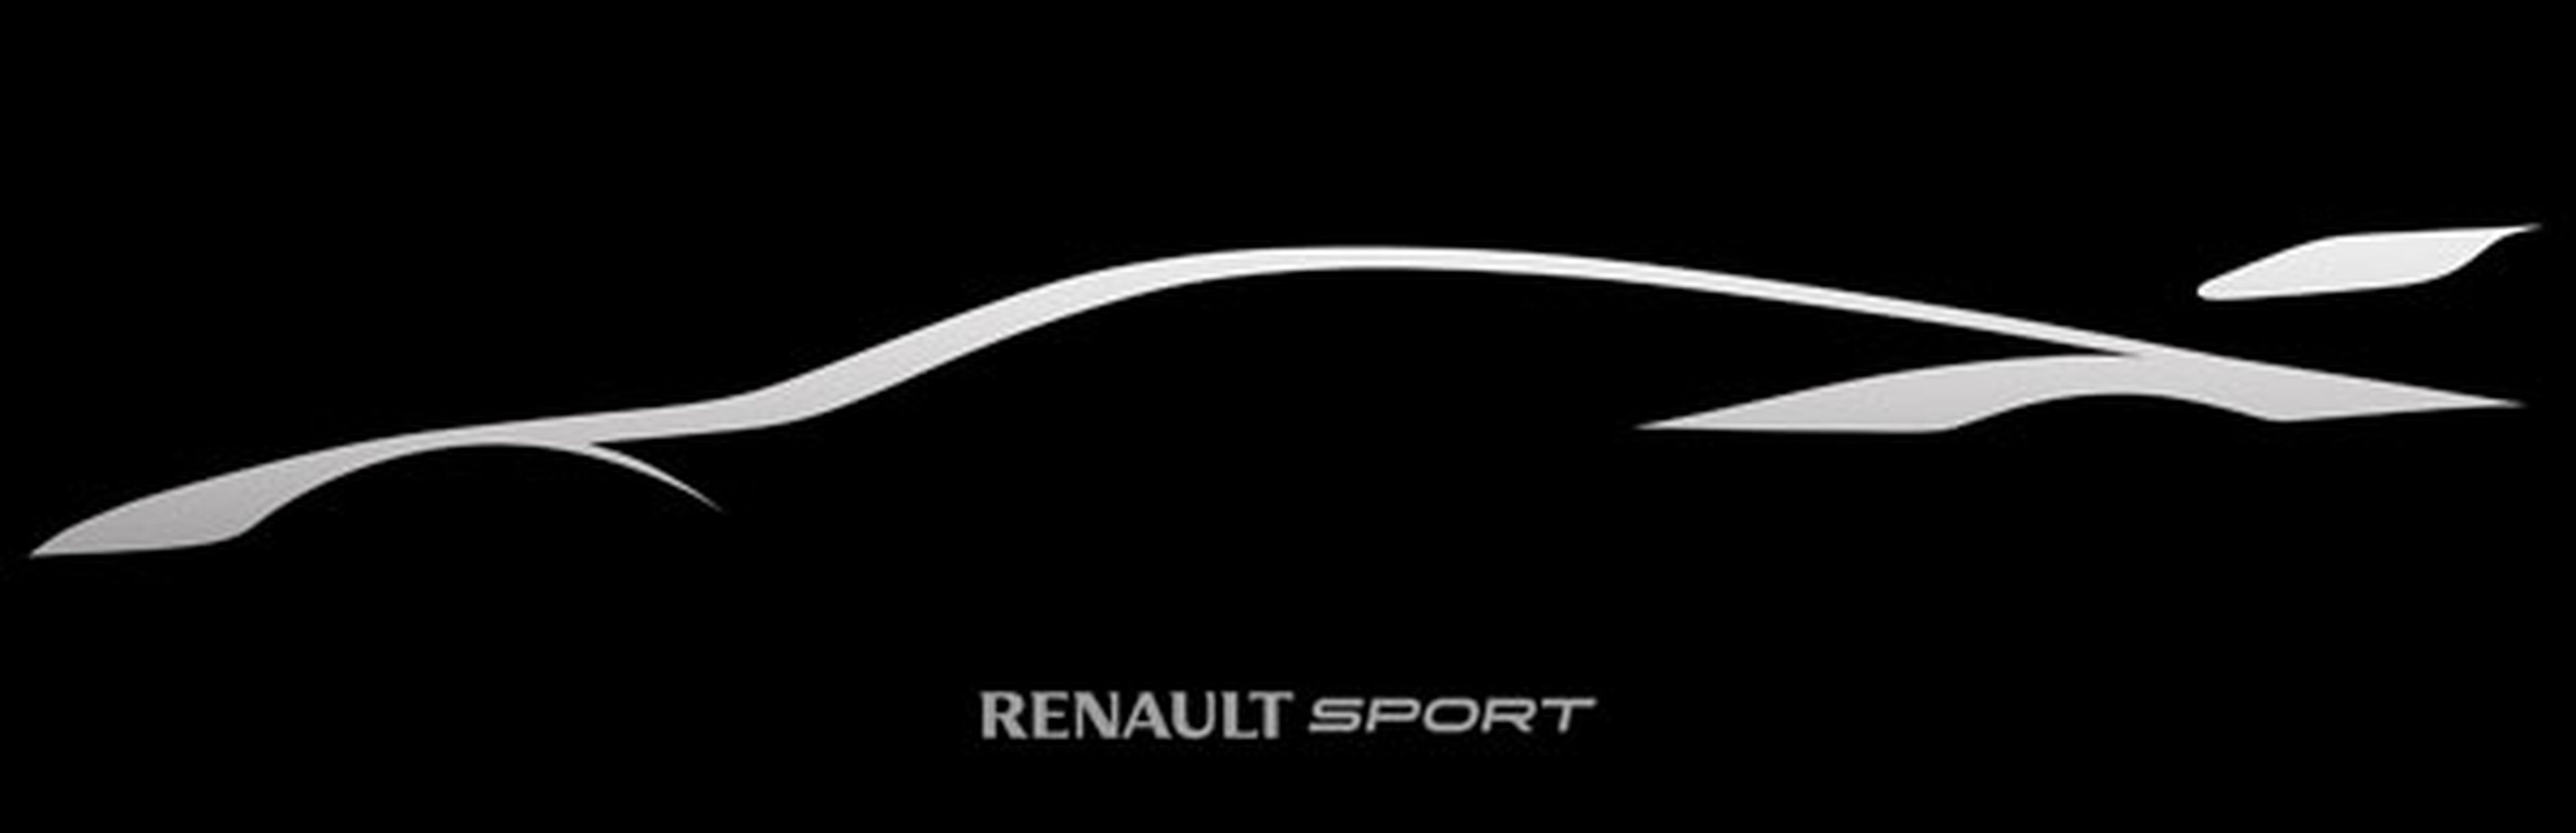 Renaultsport Trophy show car: nacido para competir